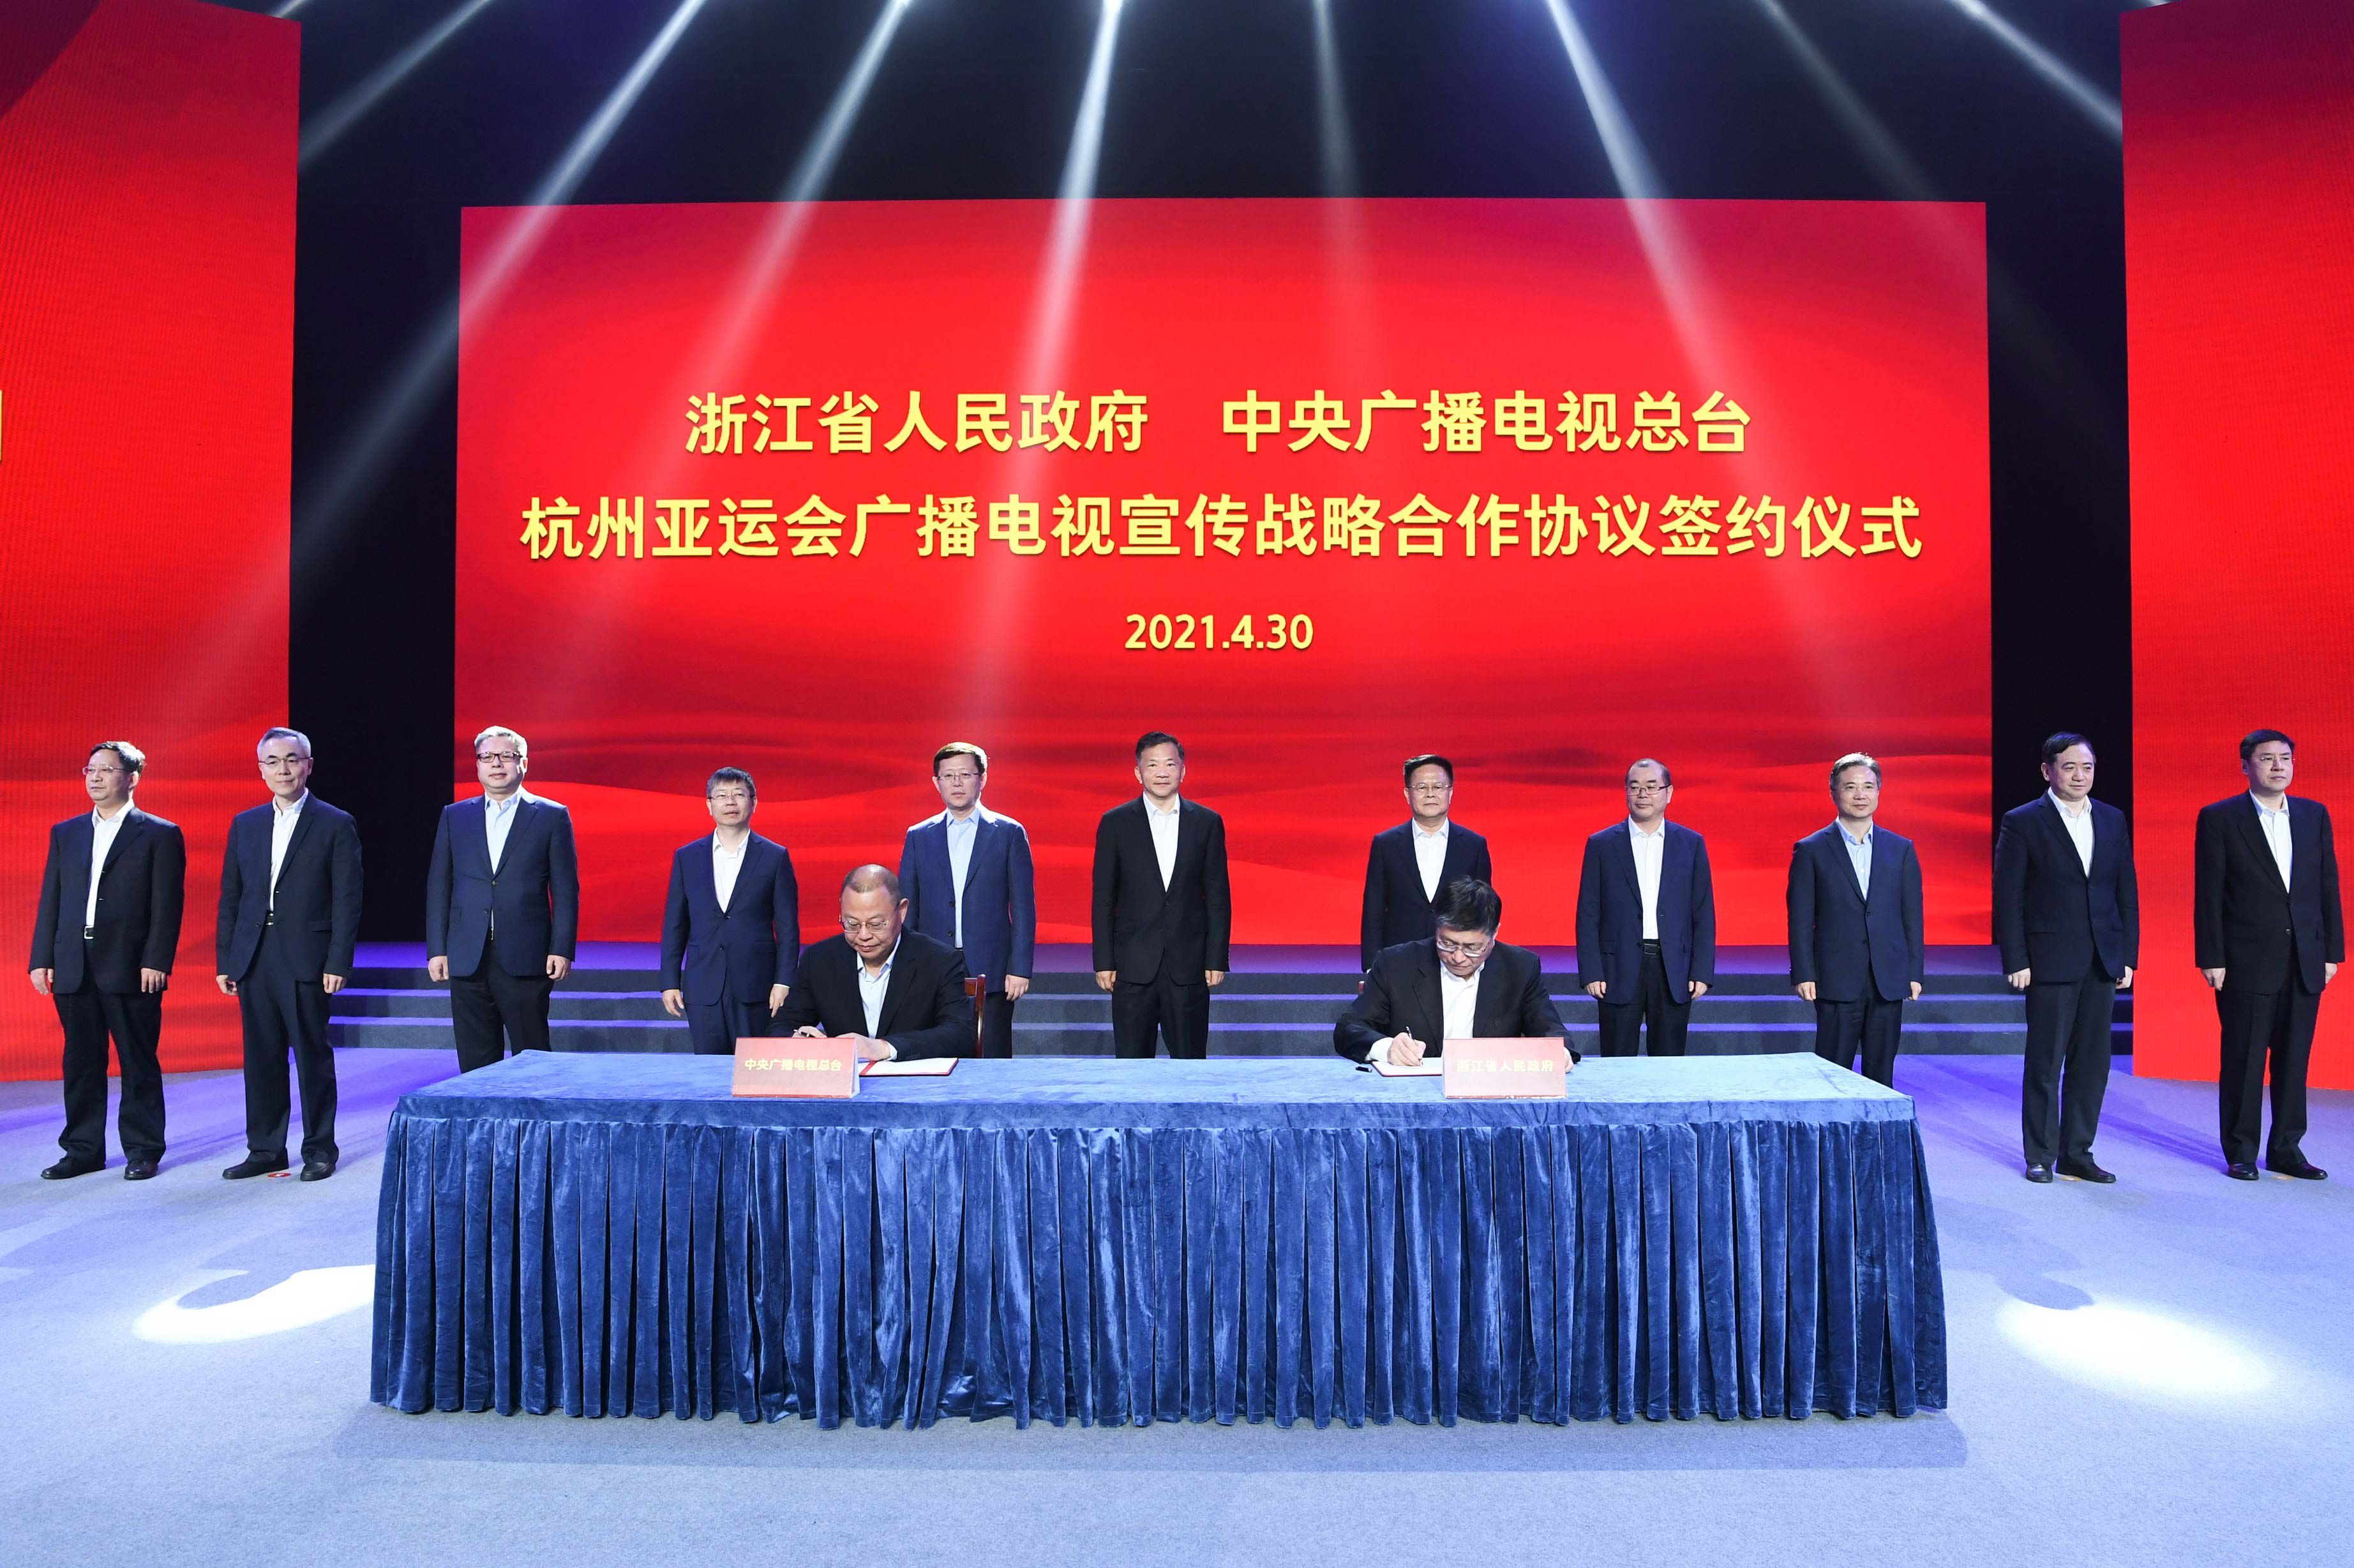 中央广播电视总台与浙江省人民政府签署杭州亚运会广播电视宣传战略合作协议